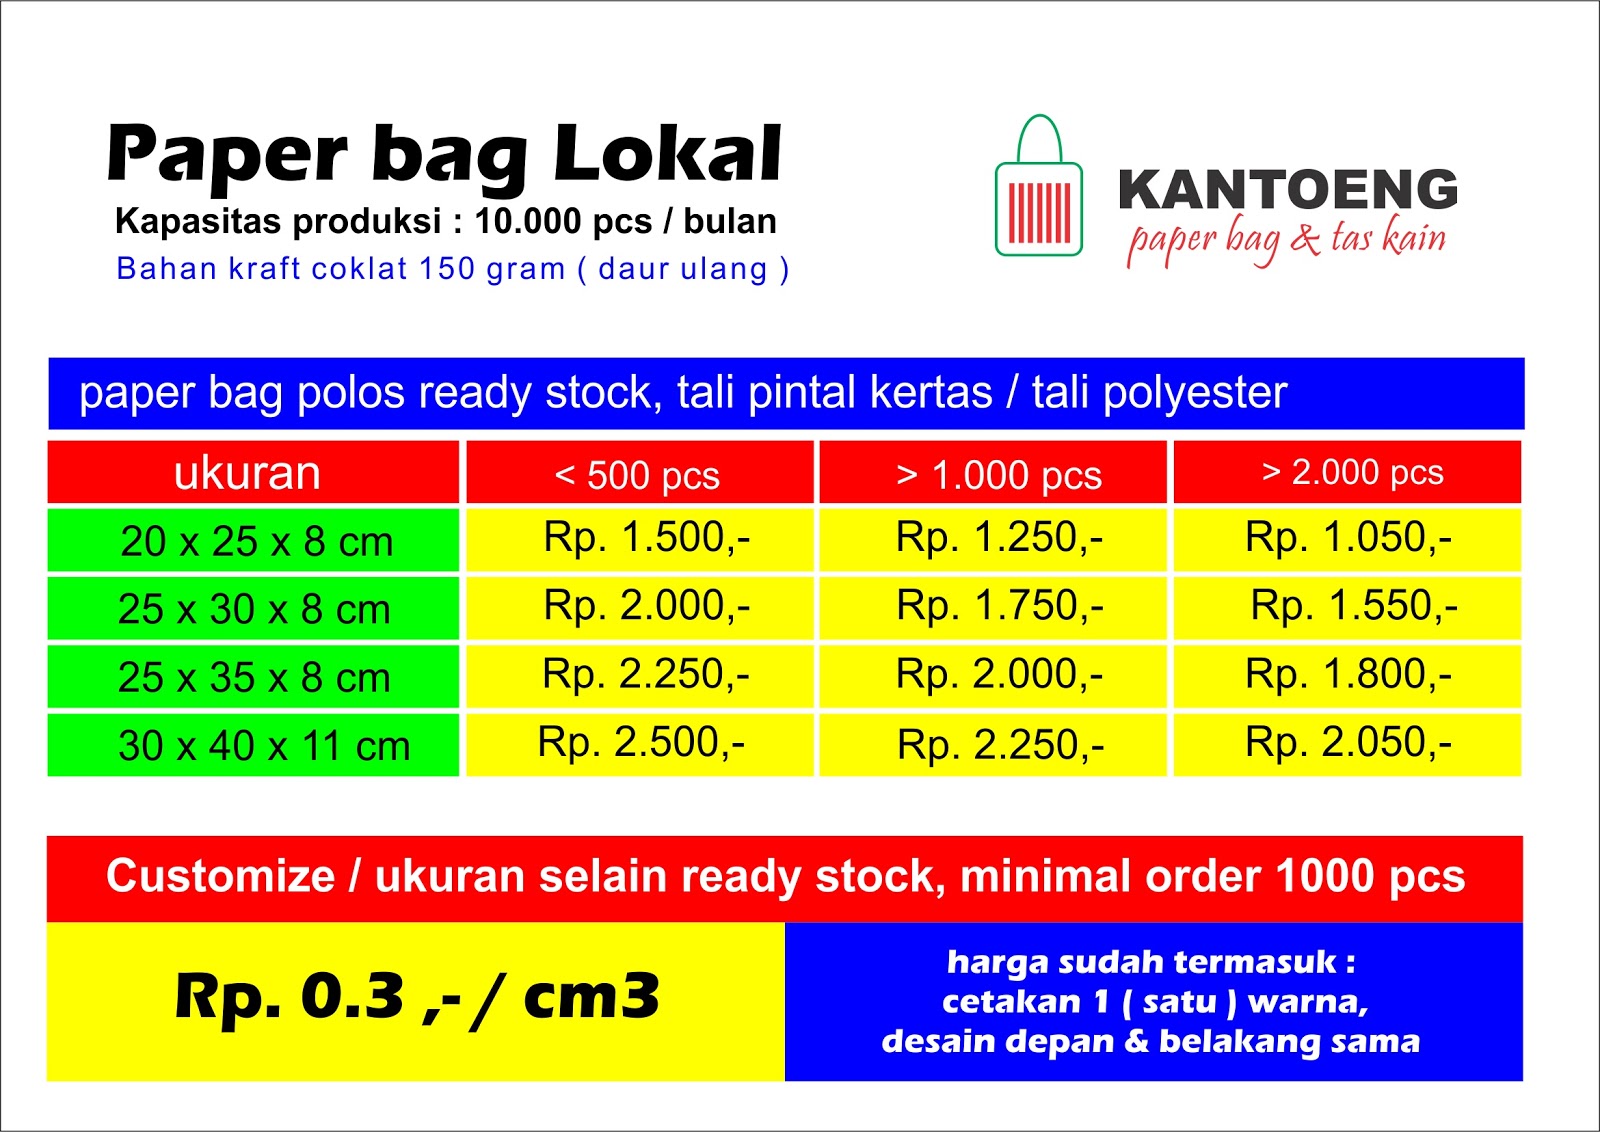 ... dan tas kain: daftar harga paper bag & tas kain dari kantoeng 2013